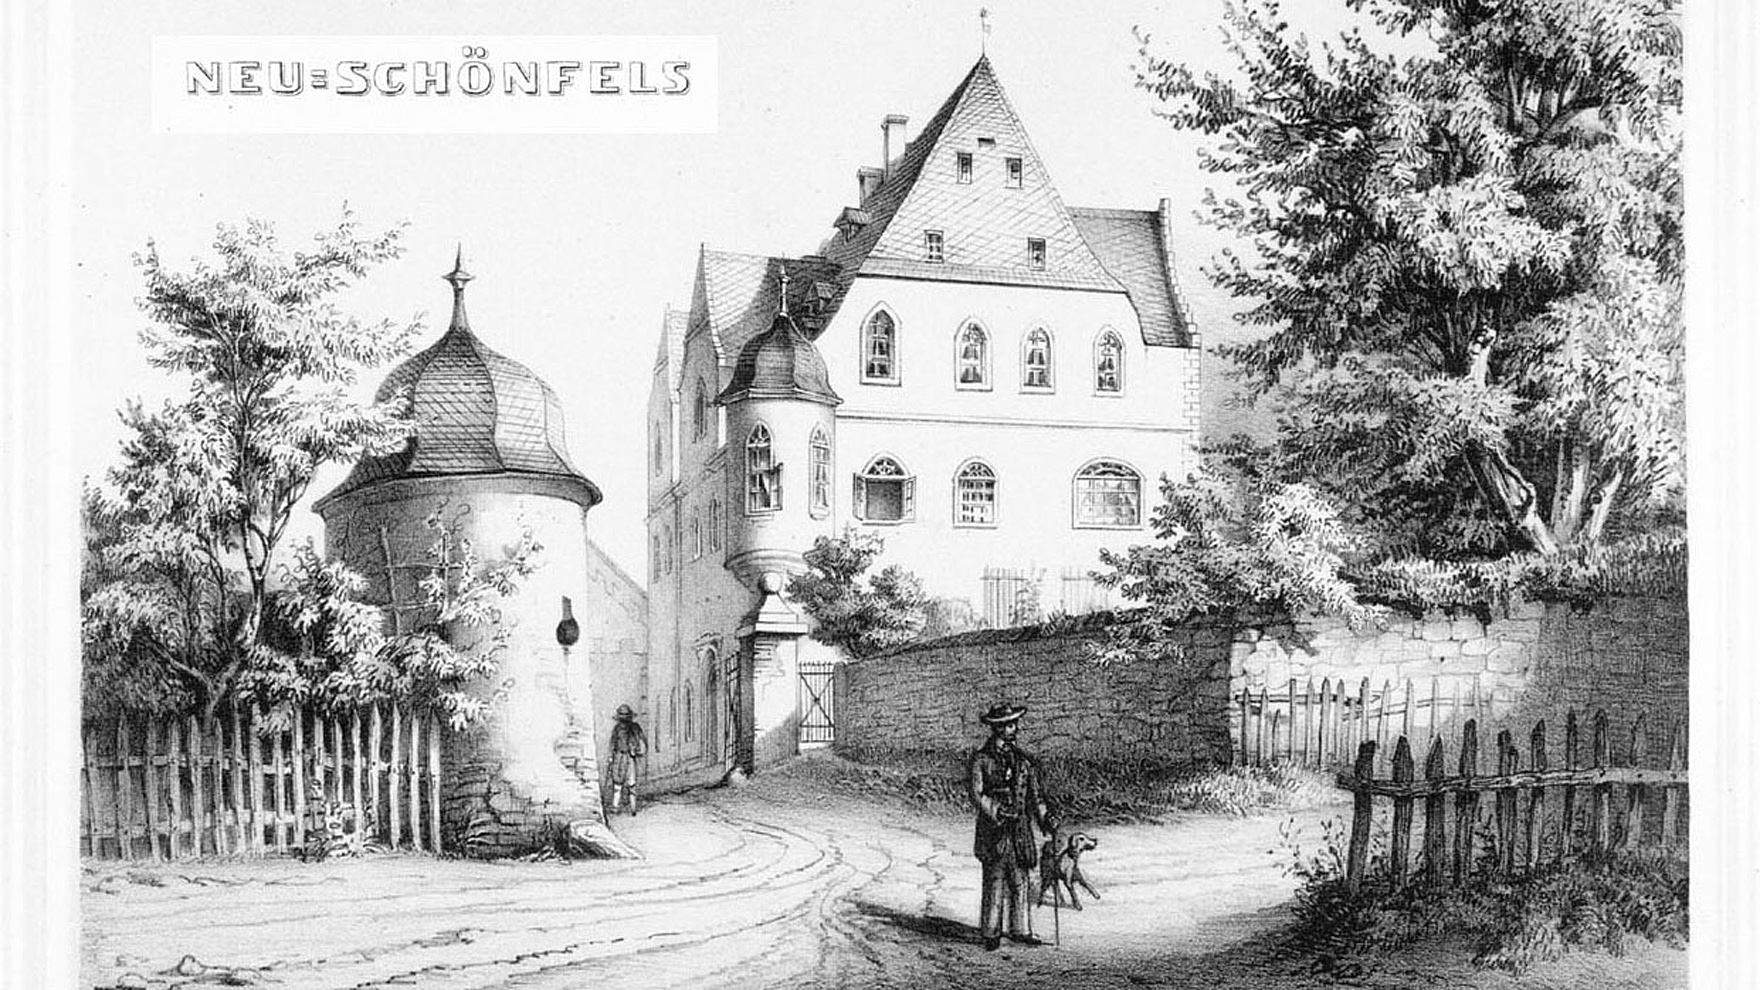 Ansicht von Neuschönfels, Mitte 19. Jh., aus: G. A. Poenicke, Album der Rittergüter und Schlösser des Königreichs Sachsen, Leipzig 1860